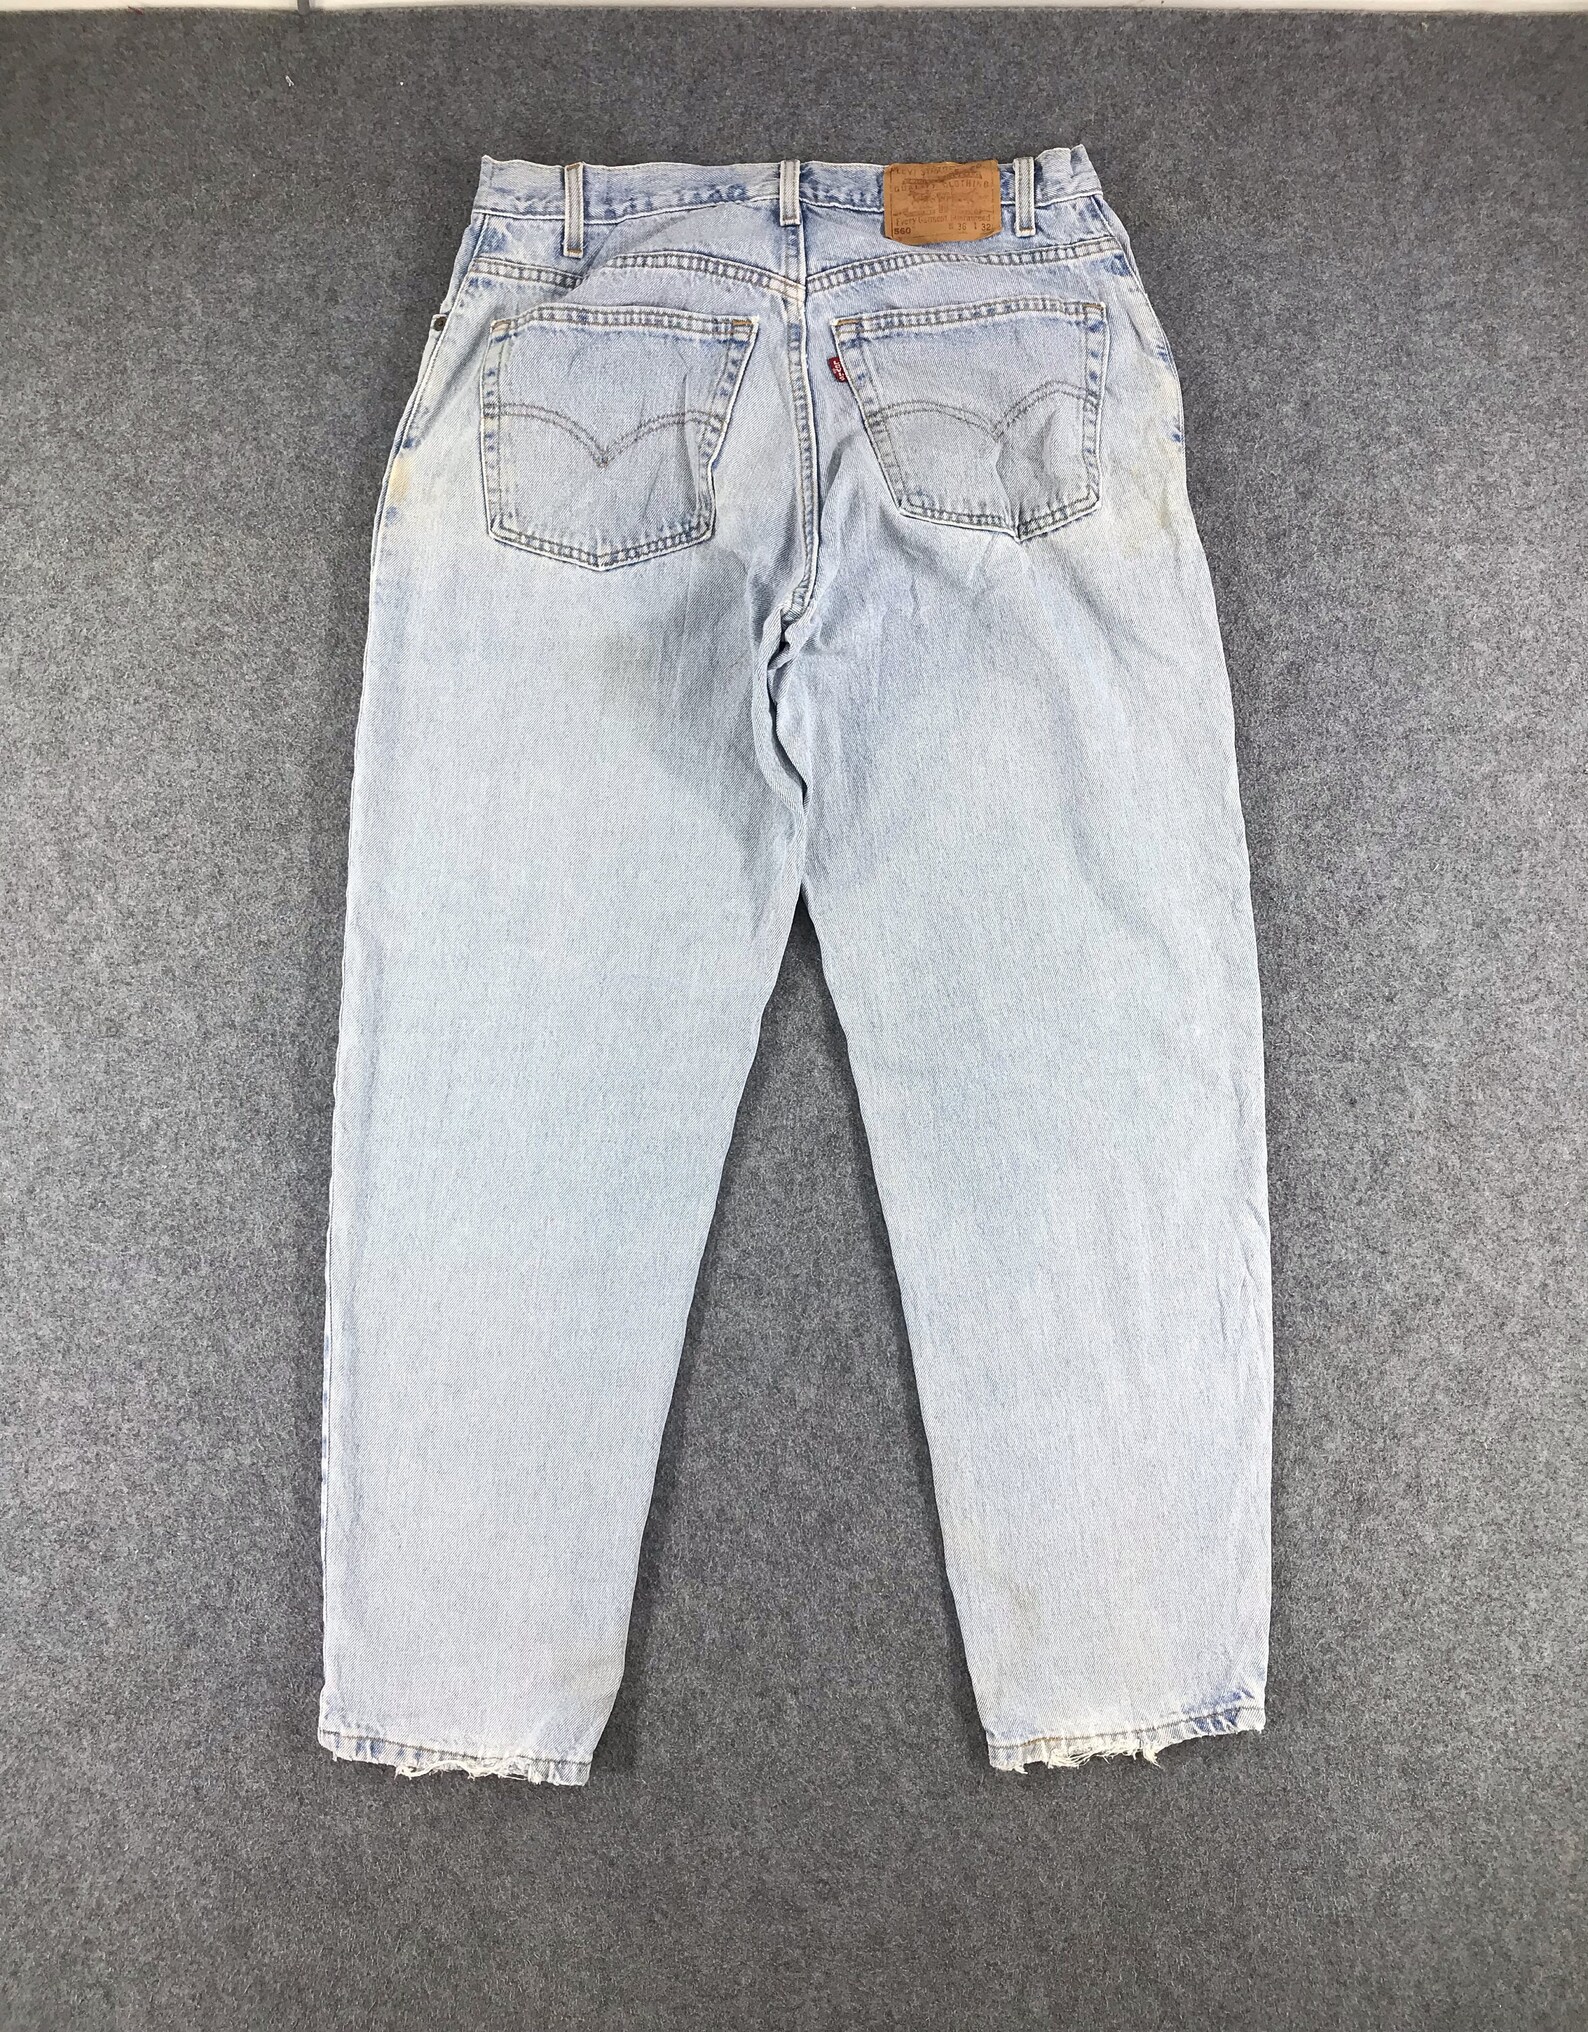 Vintage Levis 560 Jeans Light Wash Levi Loose Fit Denim Size - Etsy UK